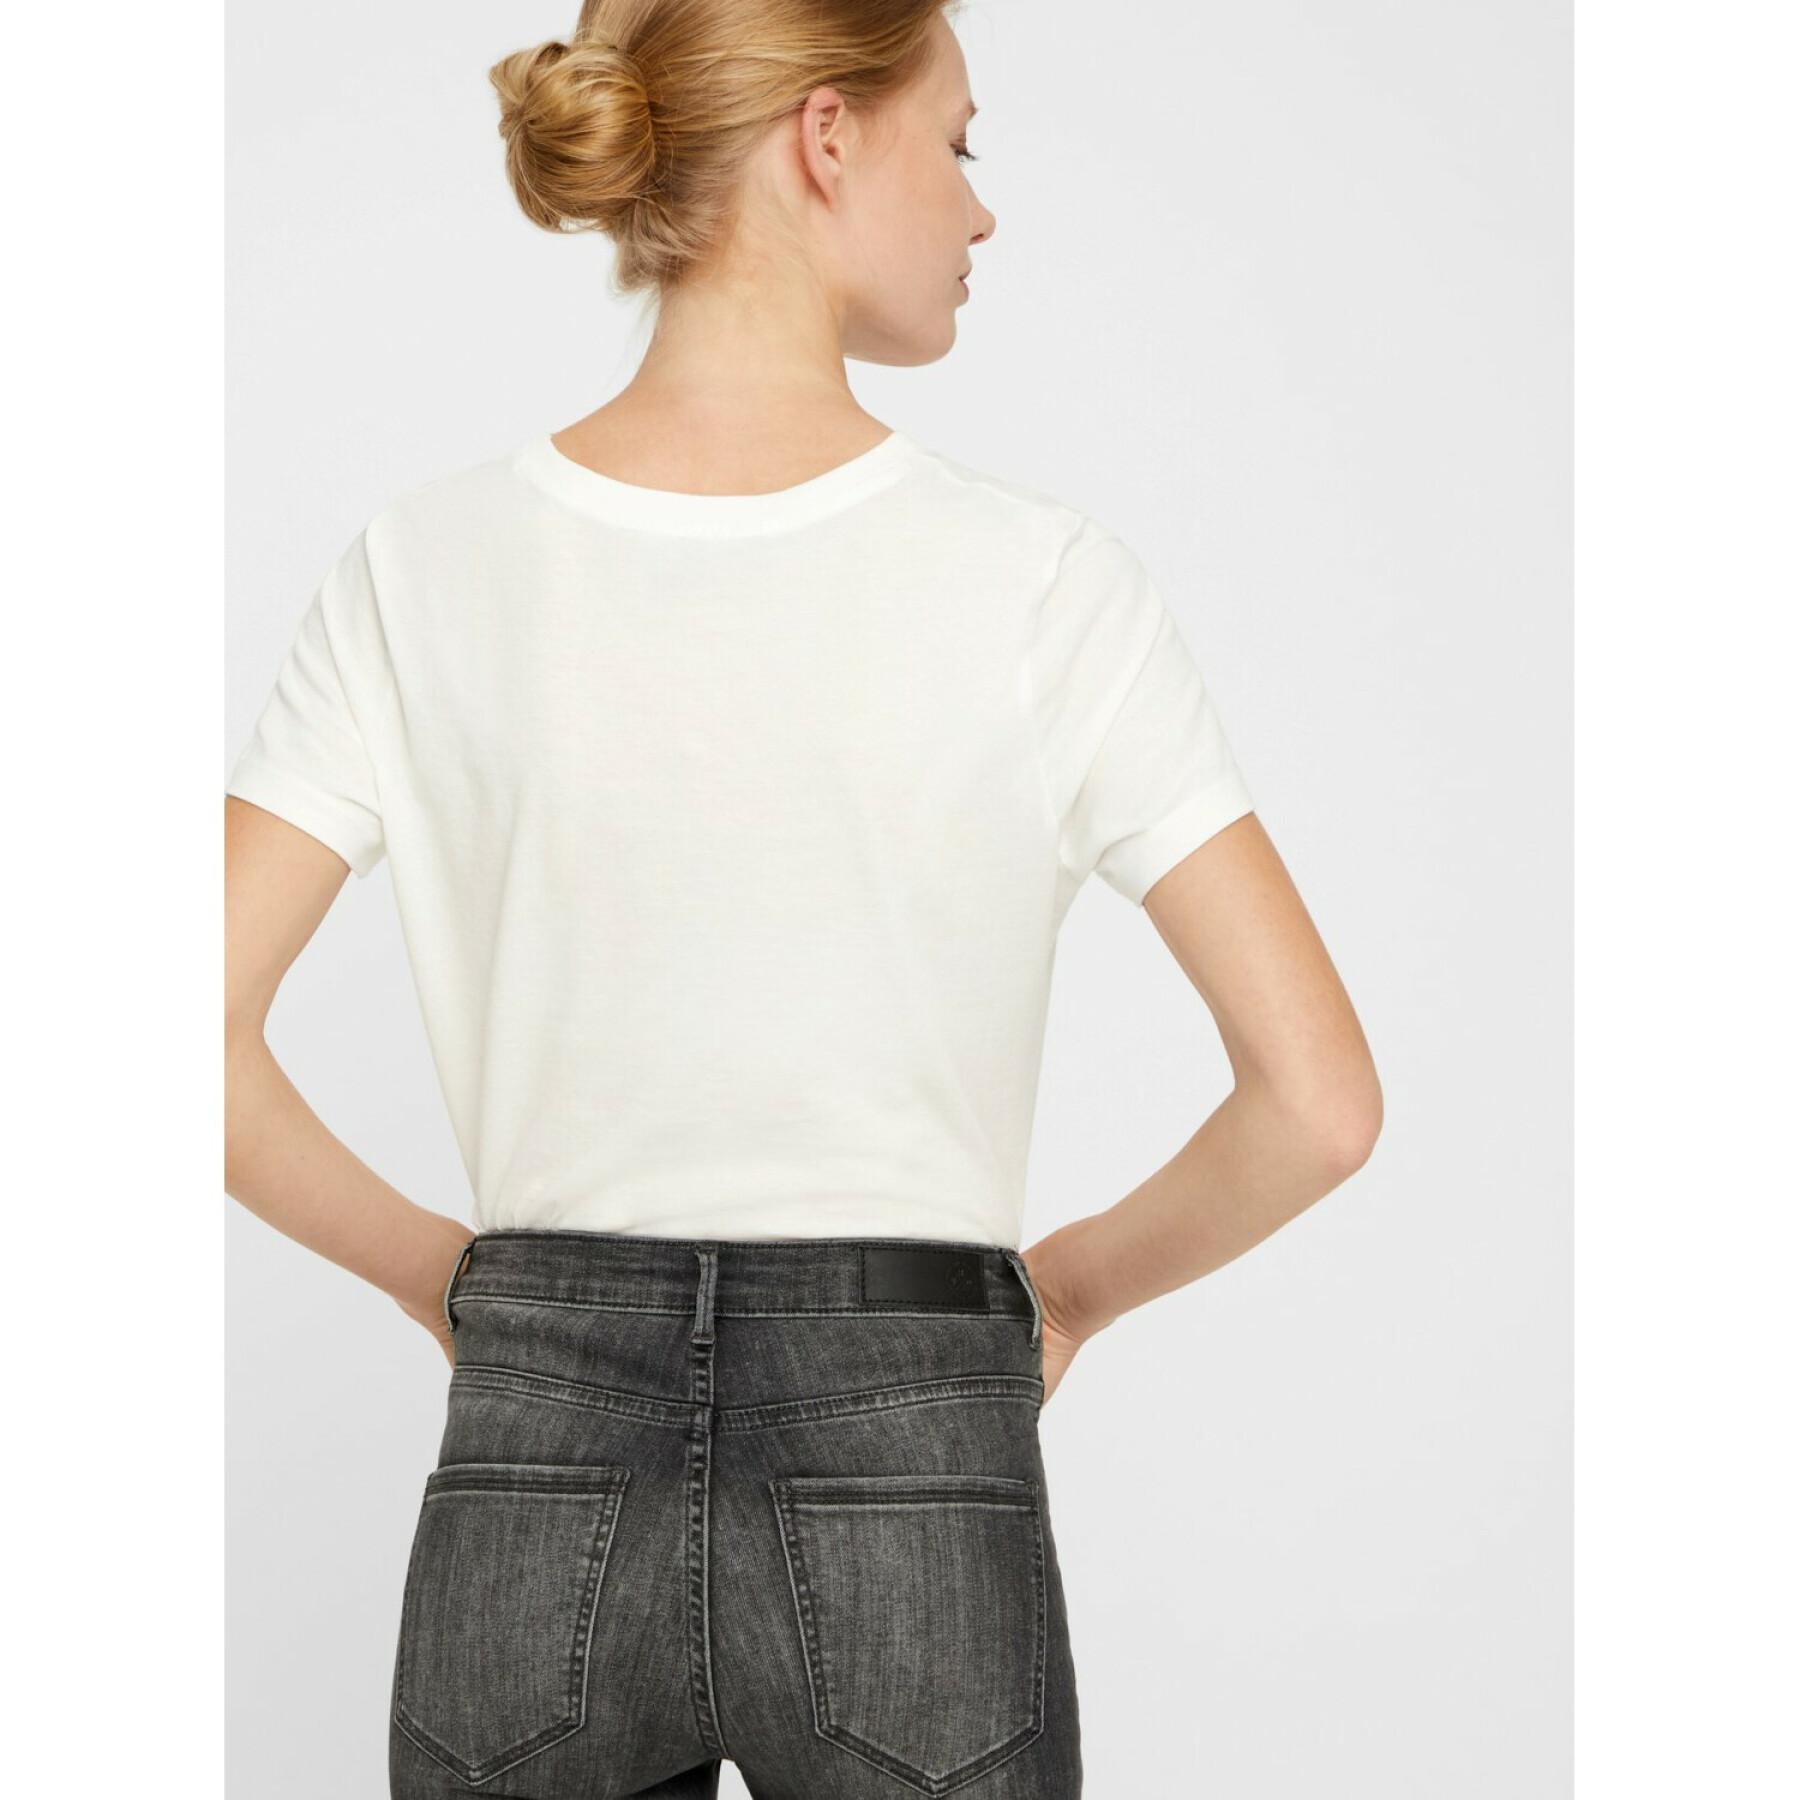 Dames skinny jeans Vero Moda vmsophia 203